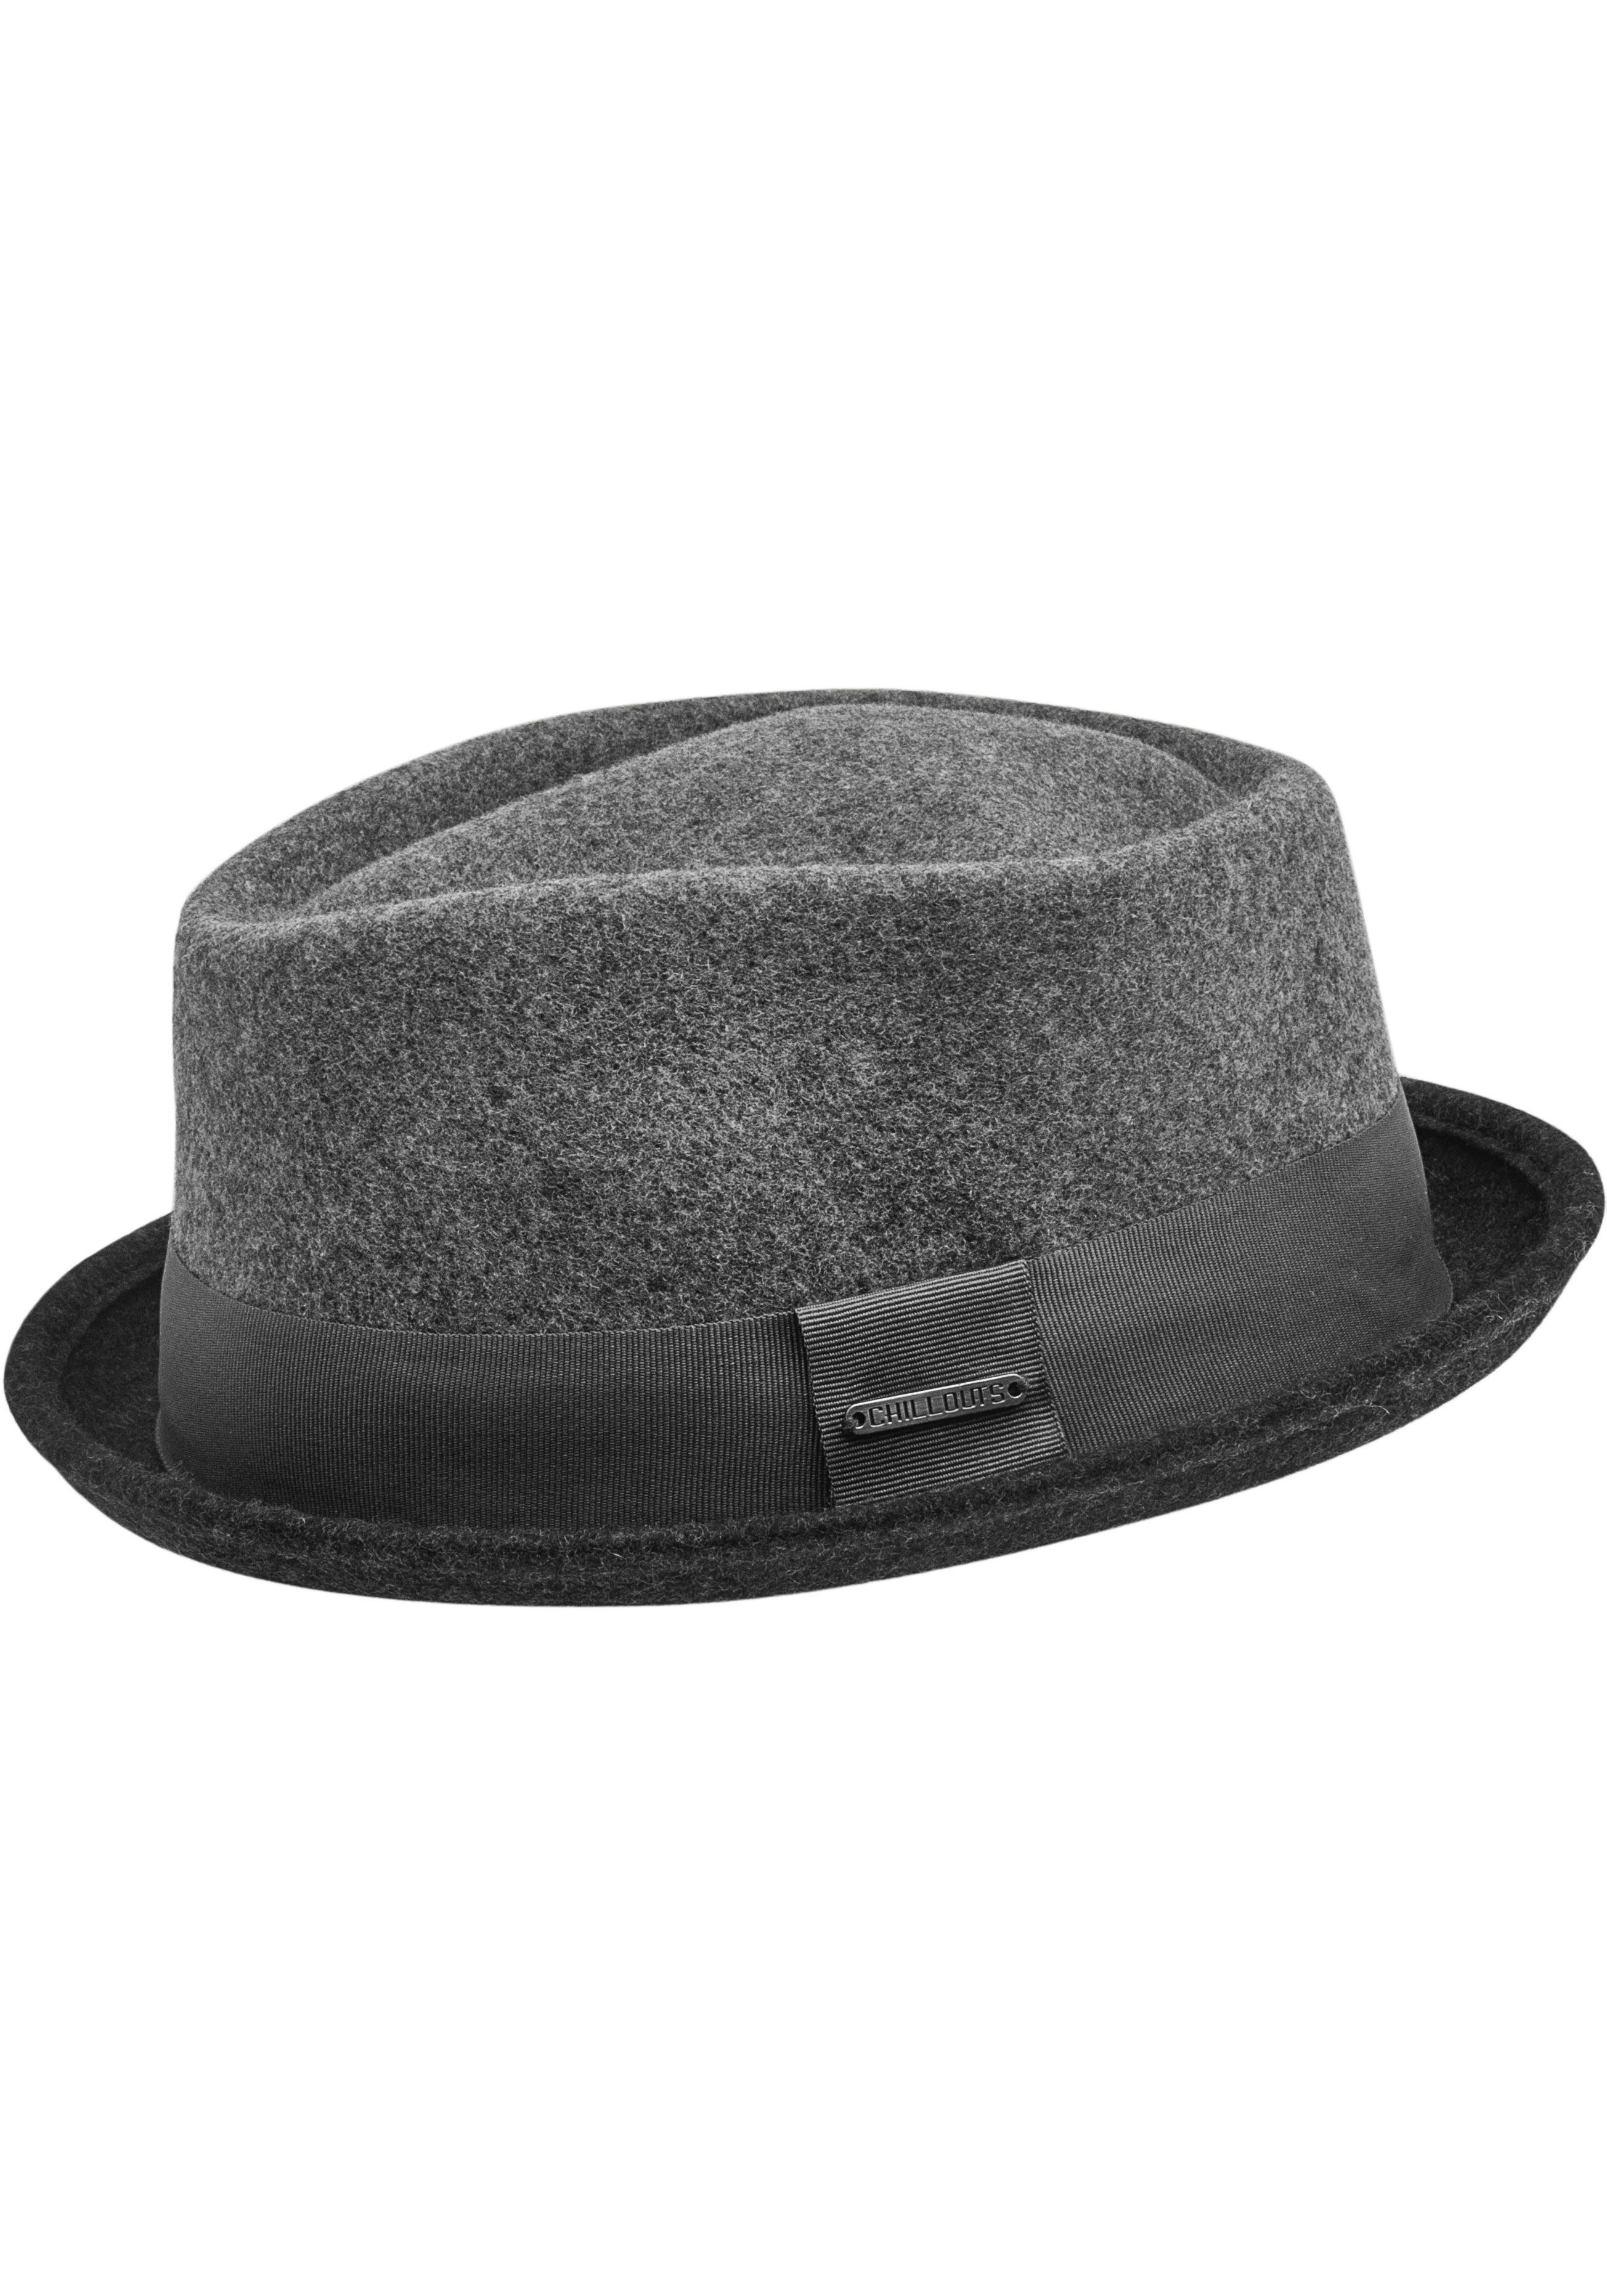 Neal Hat chillouts Filzhut grey